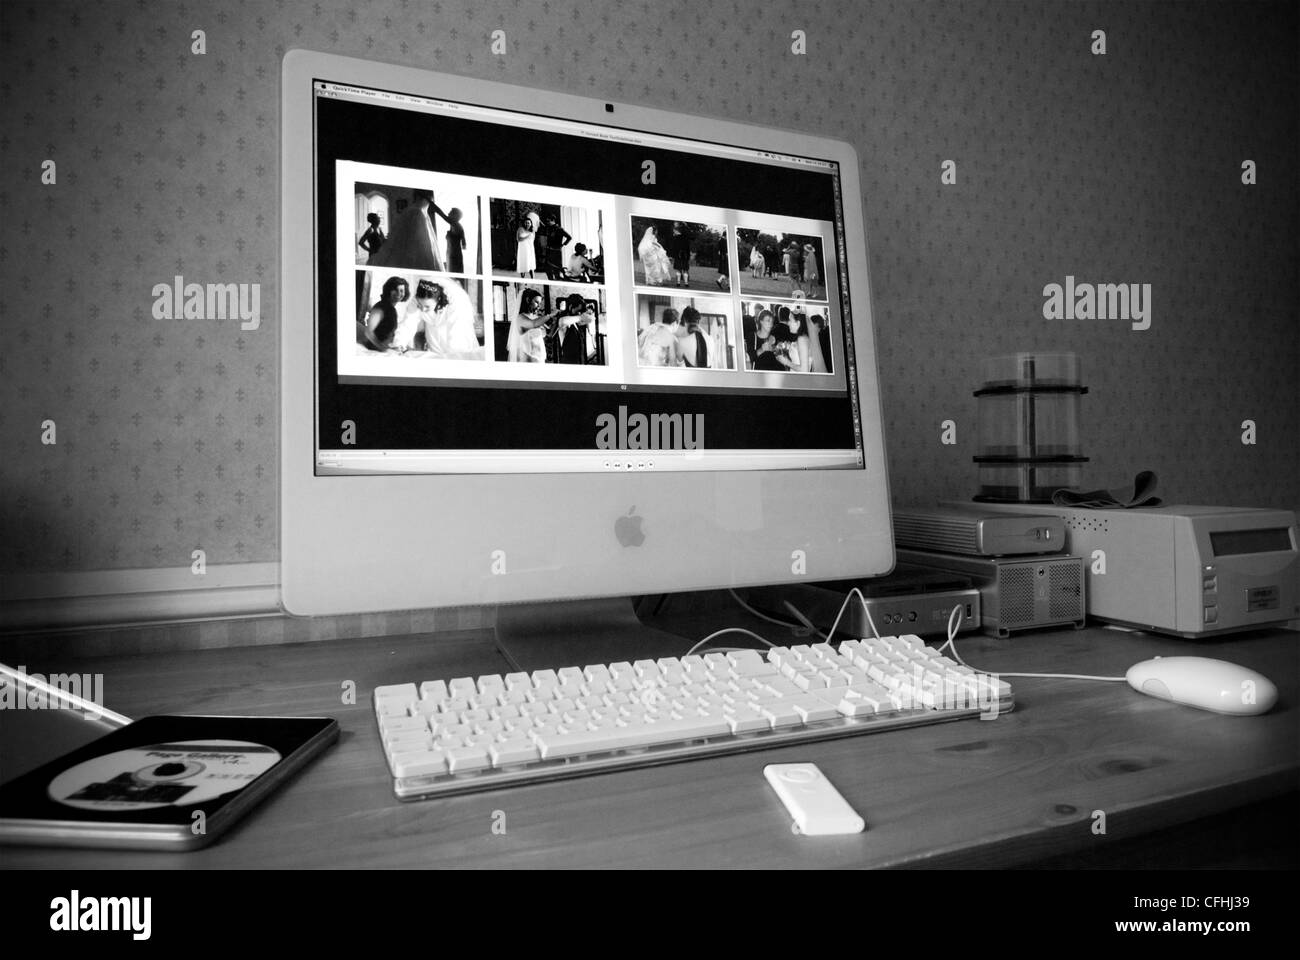 Ordinateur Apple iMac 24" avec grand écran dans un environnement de bureau d'accueil Mai 2007 version monochrome à contraste élevé Banque D'Images